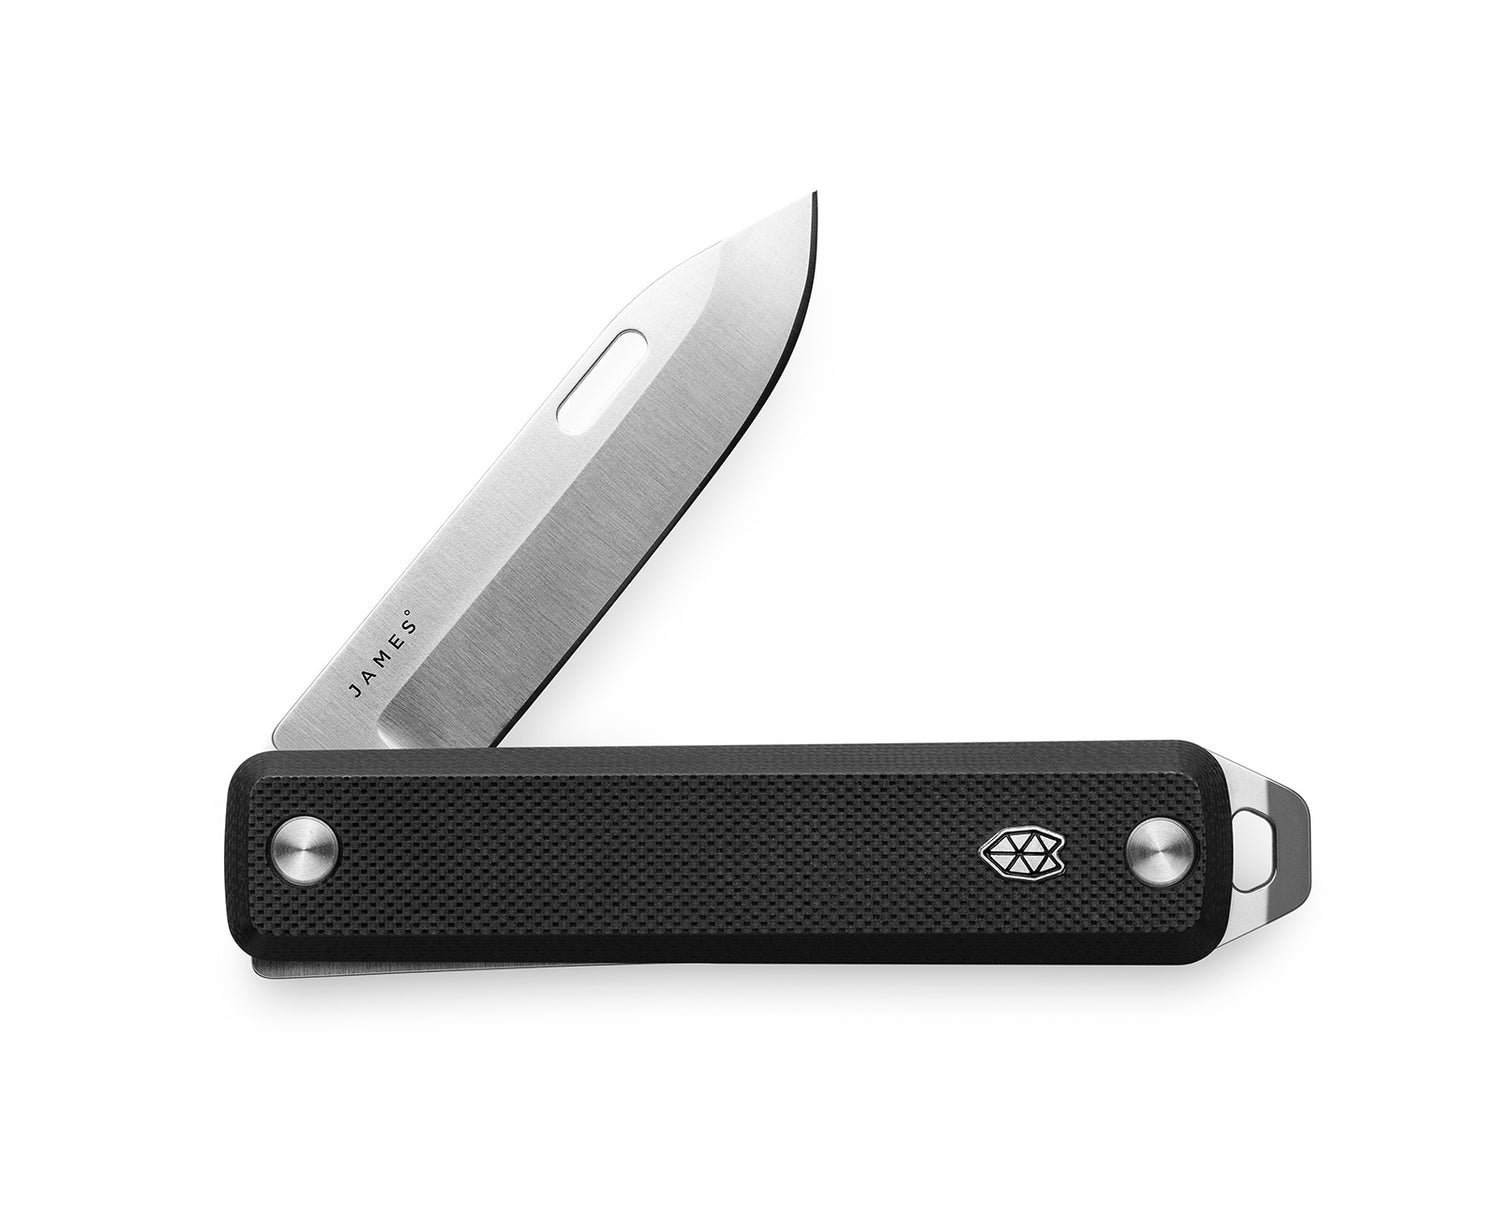 The Ellis Slim knife in black with stainless steel blade.